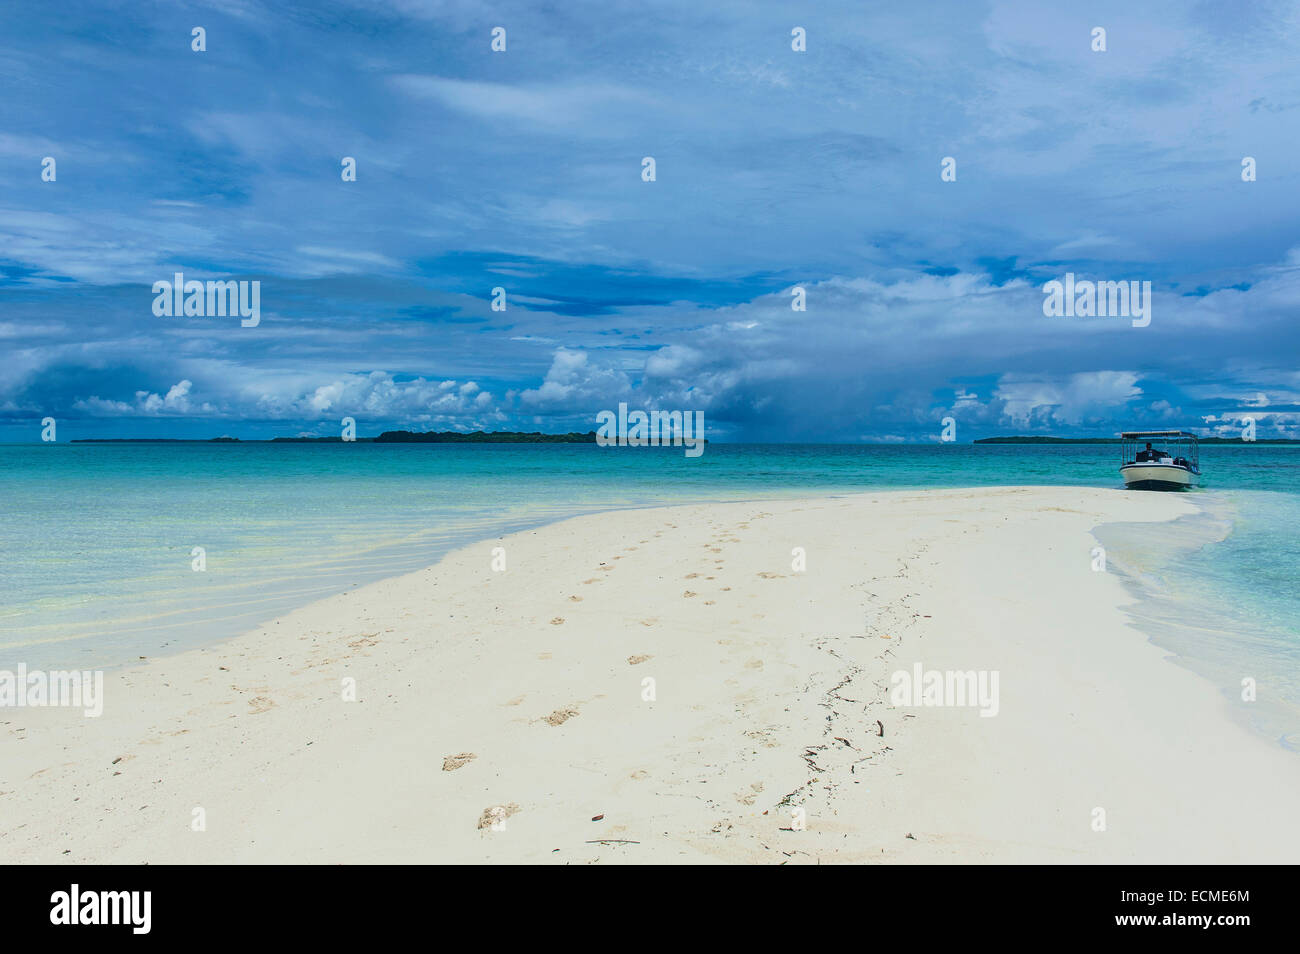 Franja de arena durante la marea baja, Islas Rocosas, Palau Foto de stock